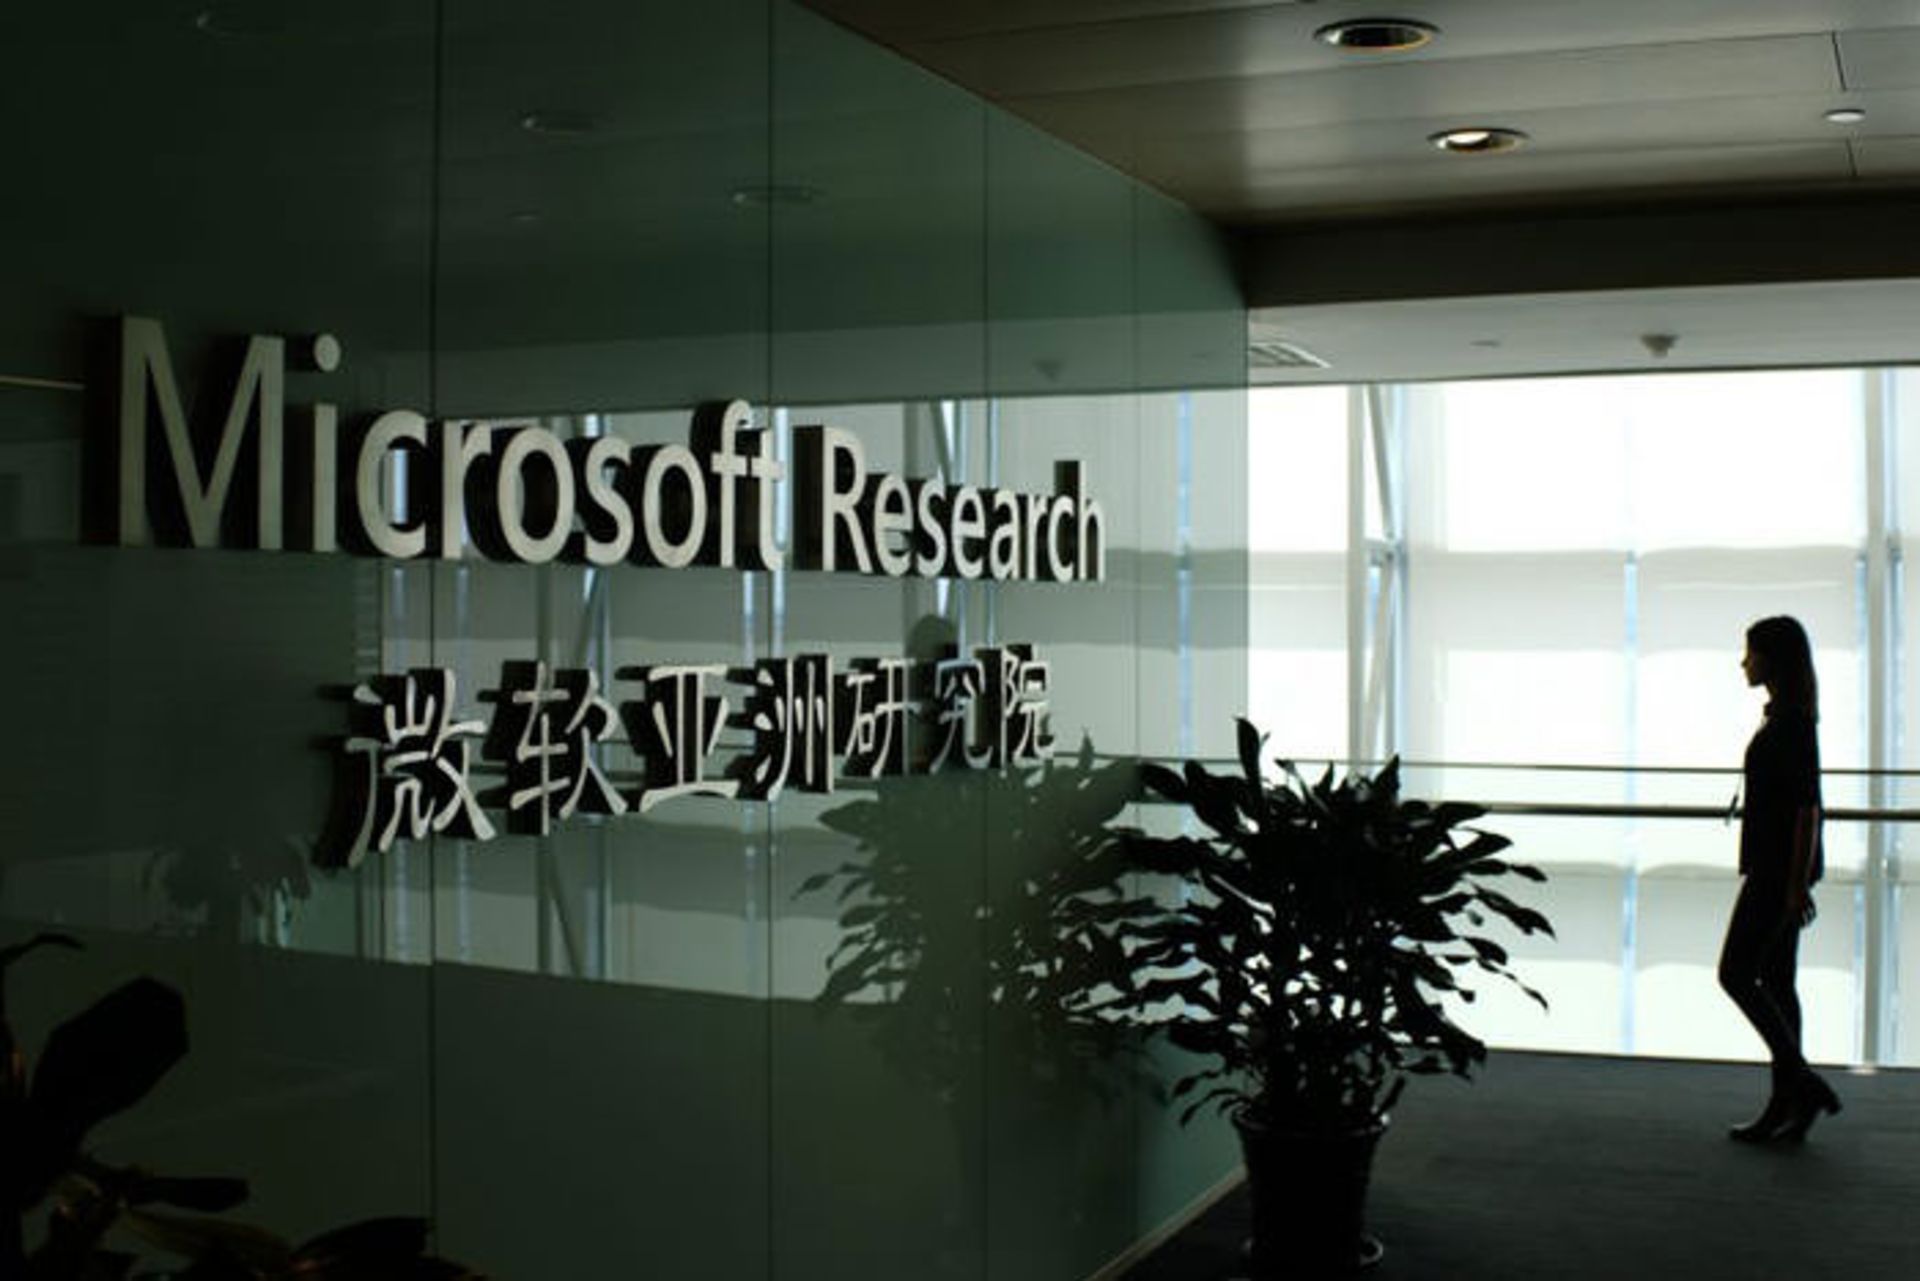 مرجع متخصصين ايران داخل ساختمان مركز تحقيقاتي مايكروسافت در چين